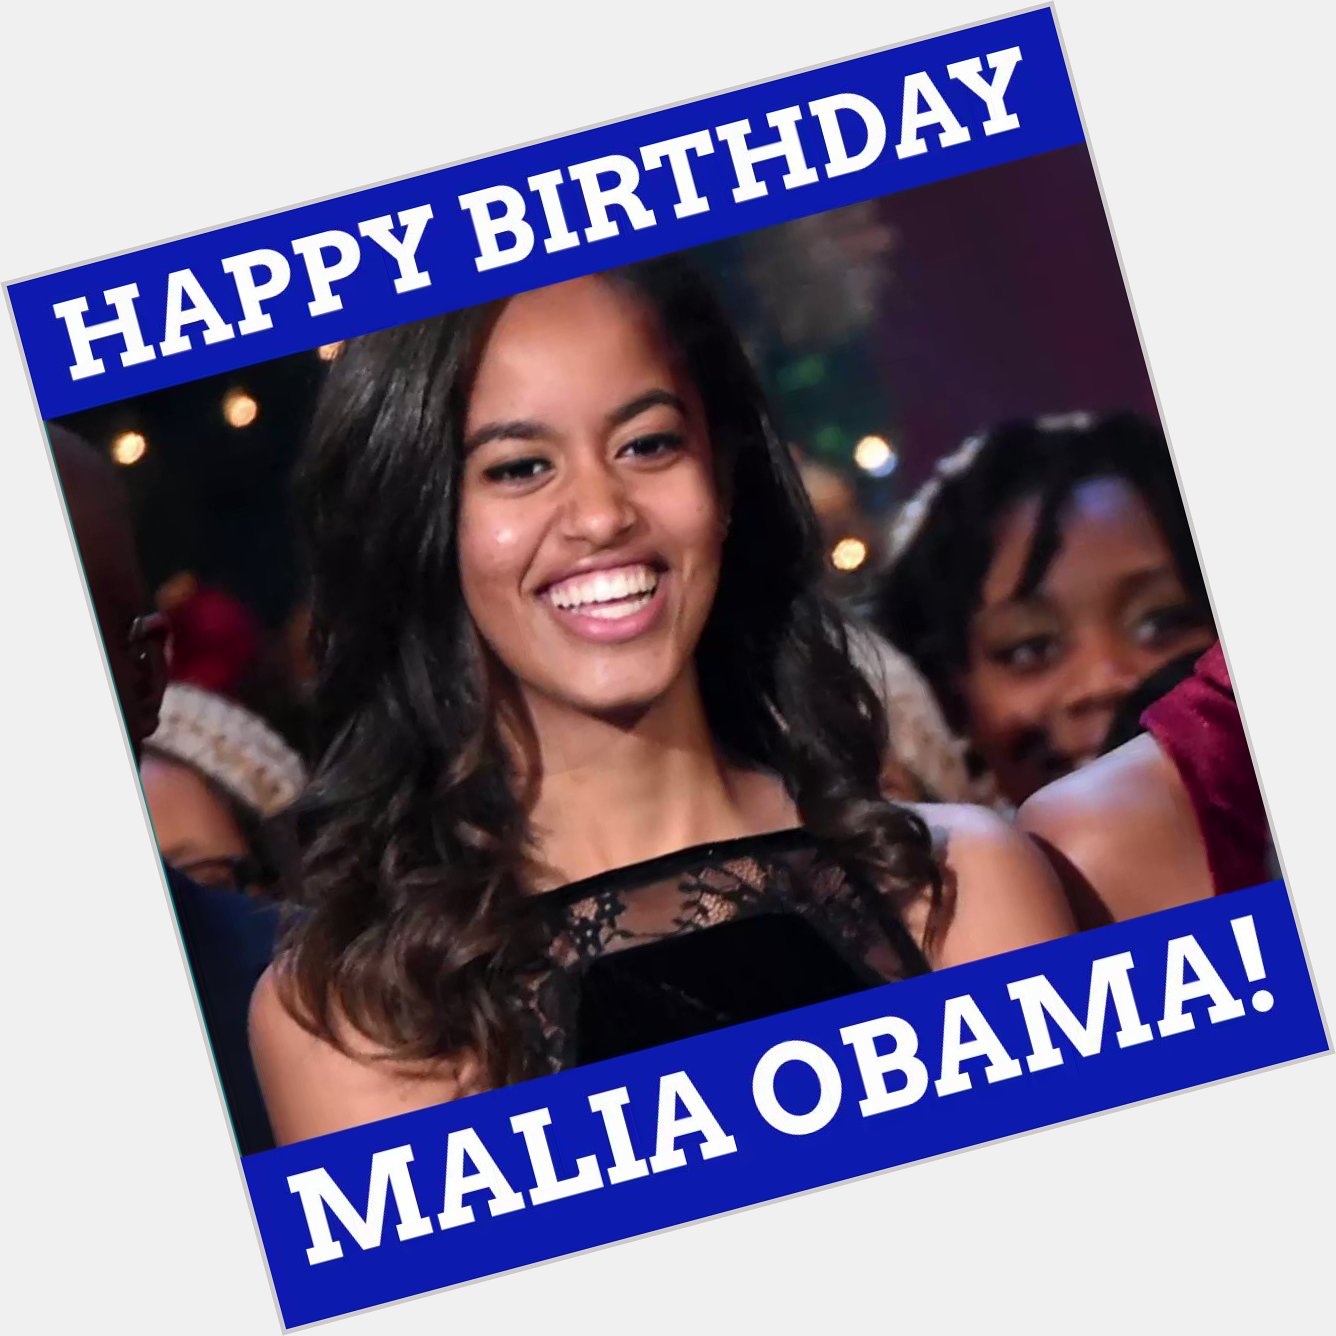 Happy birthday, Malia Obama!  